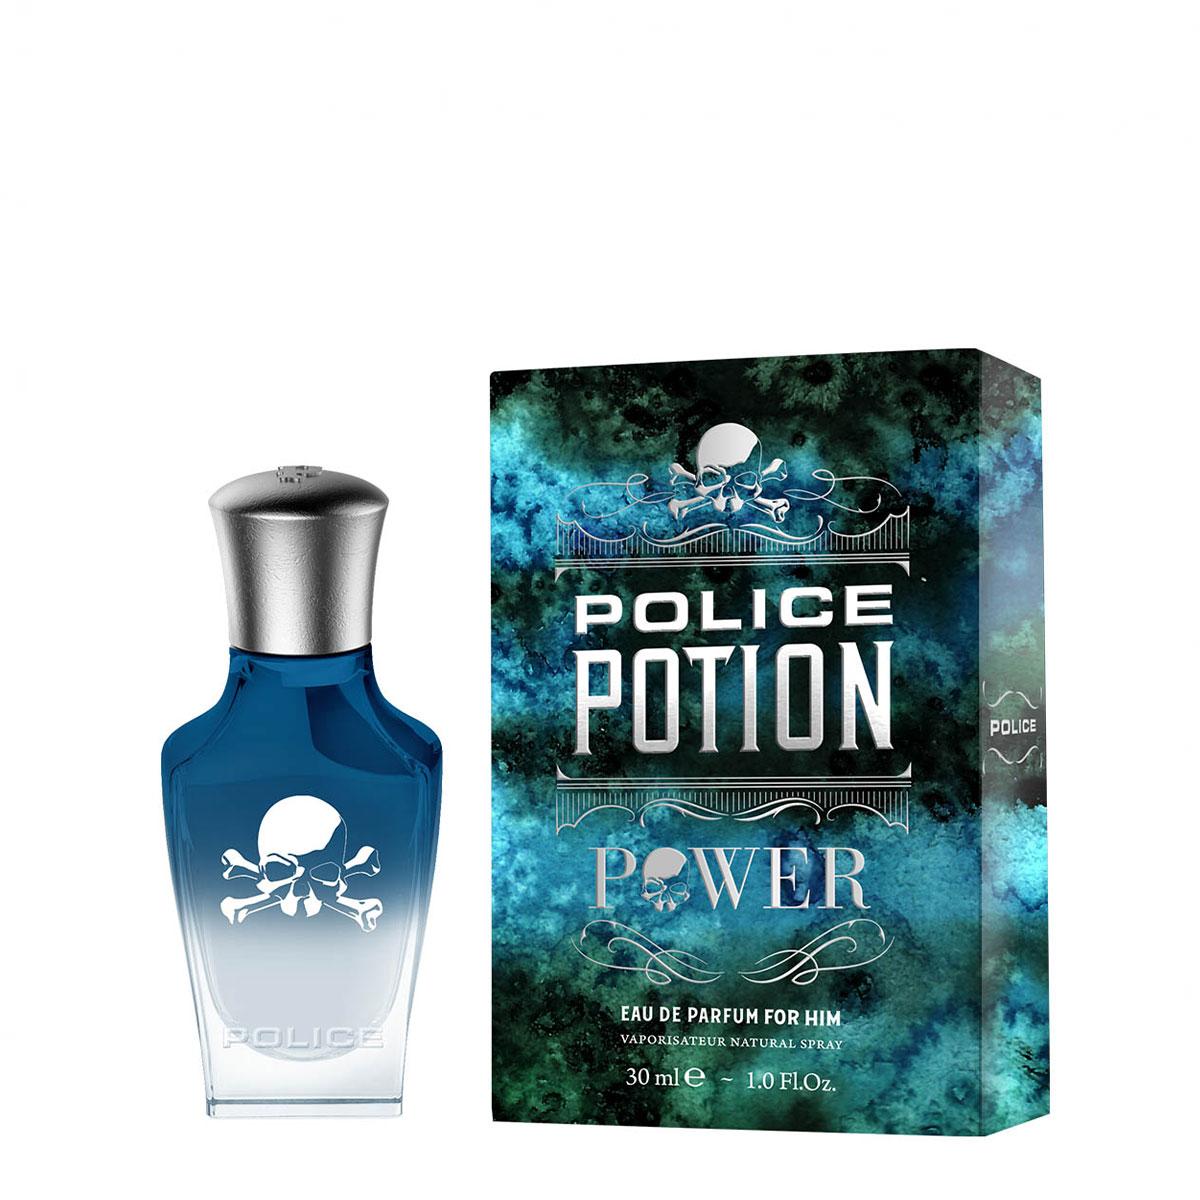 POLICE Muški parfem Potion Power 30ml